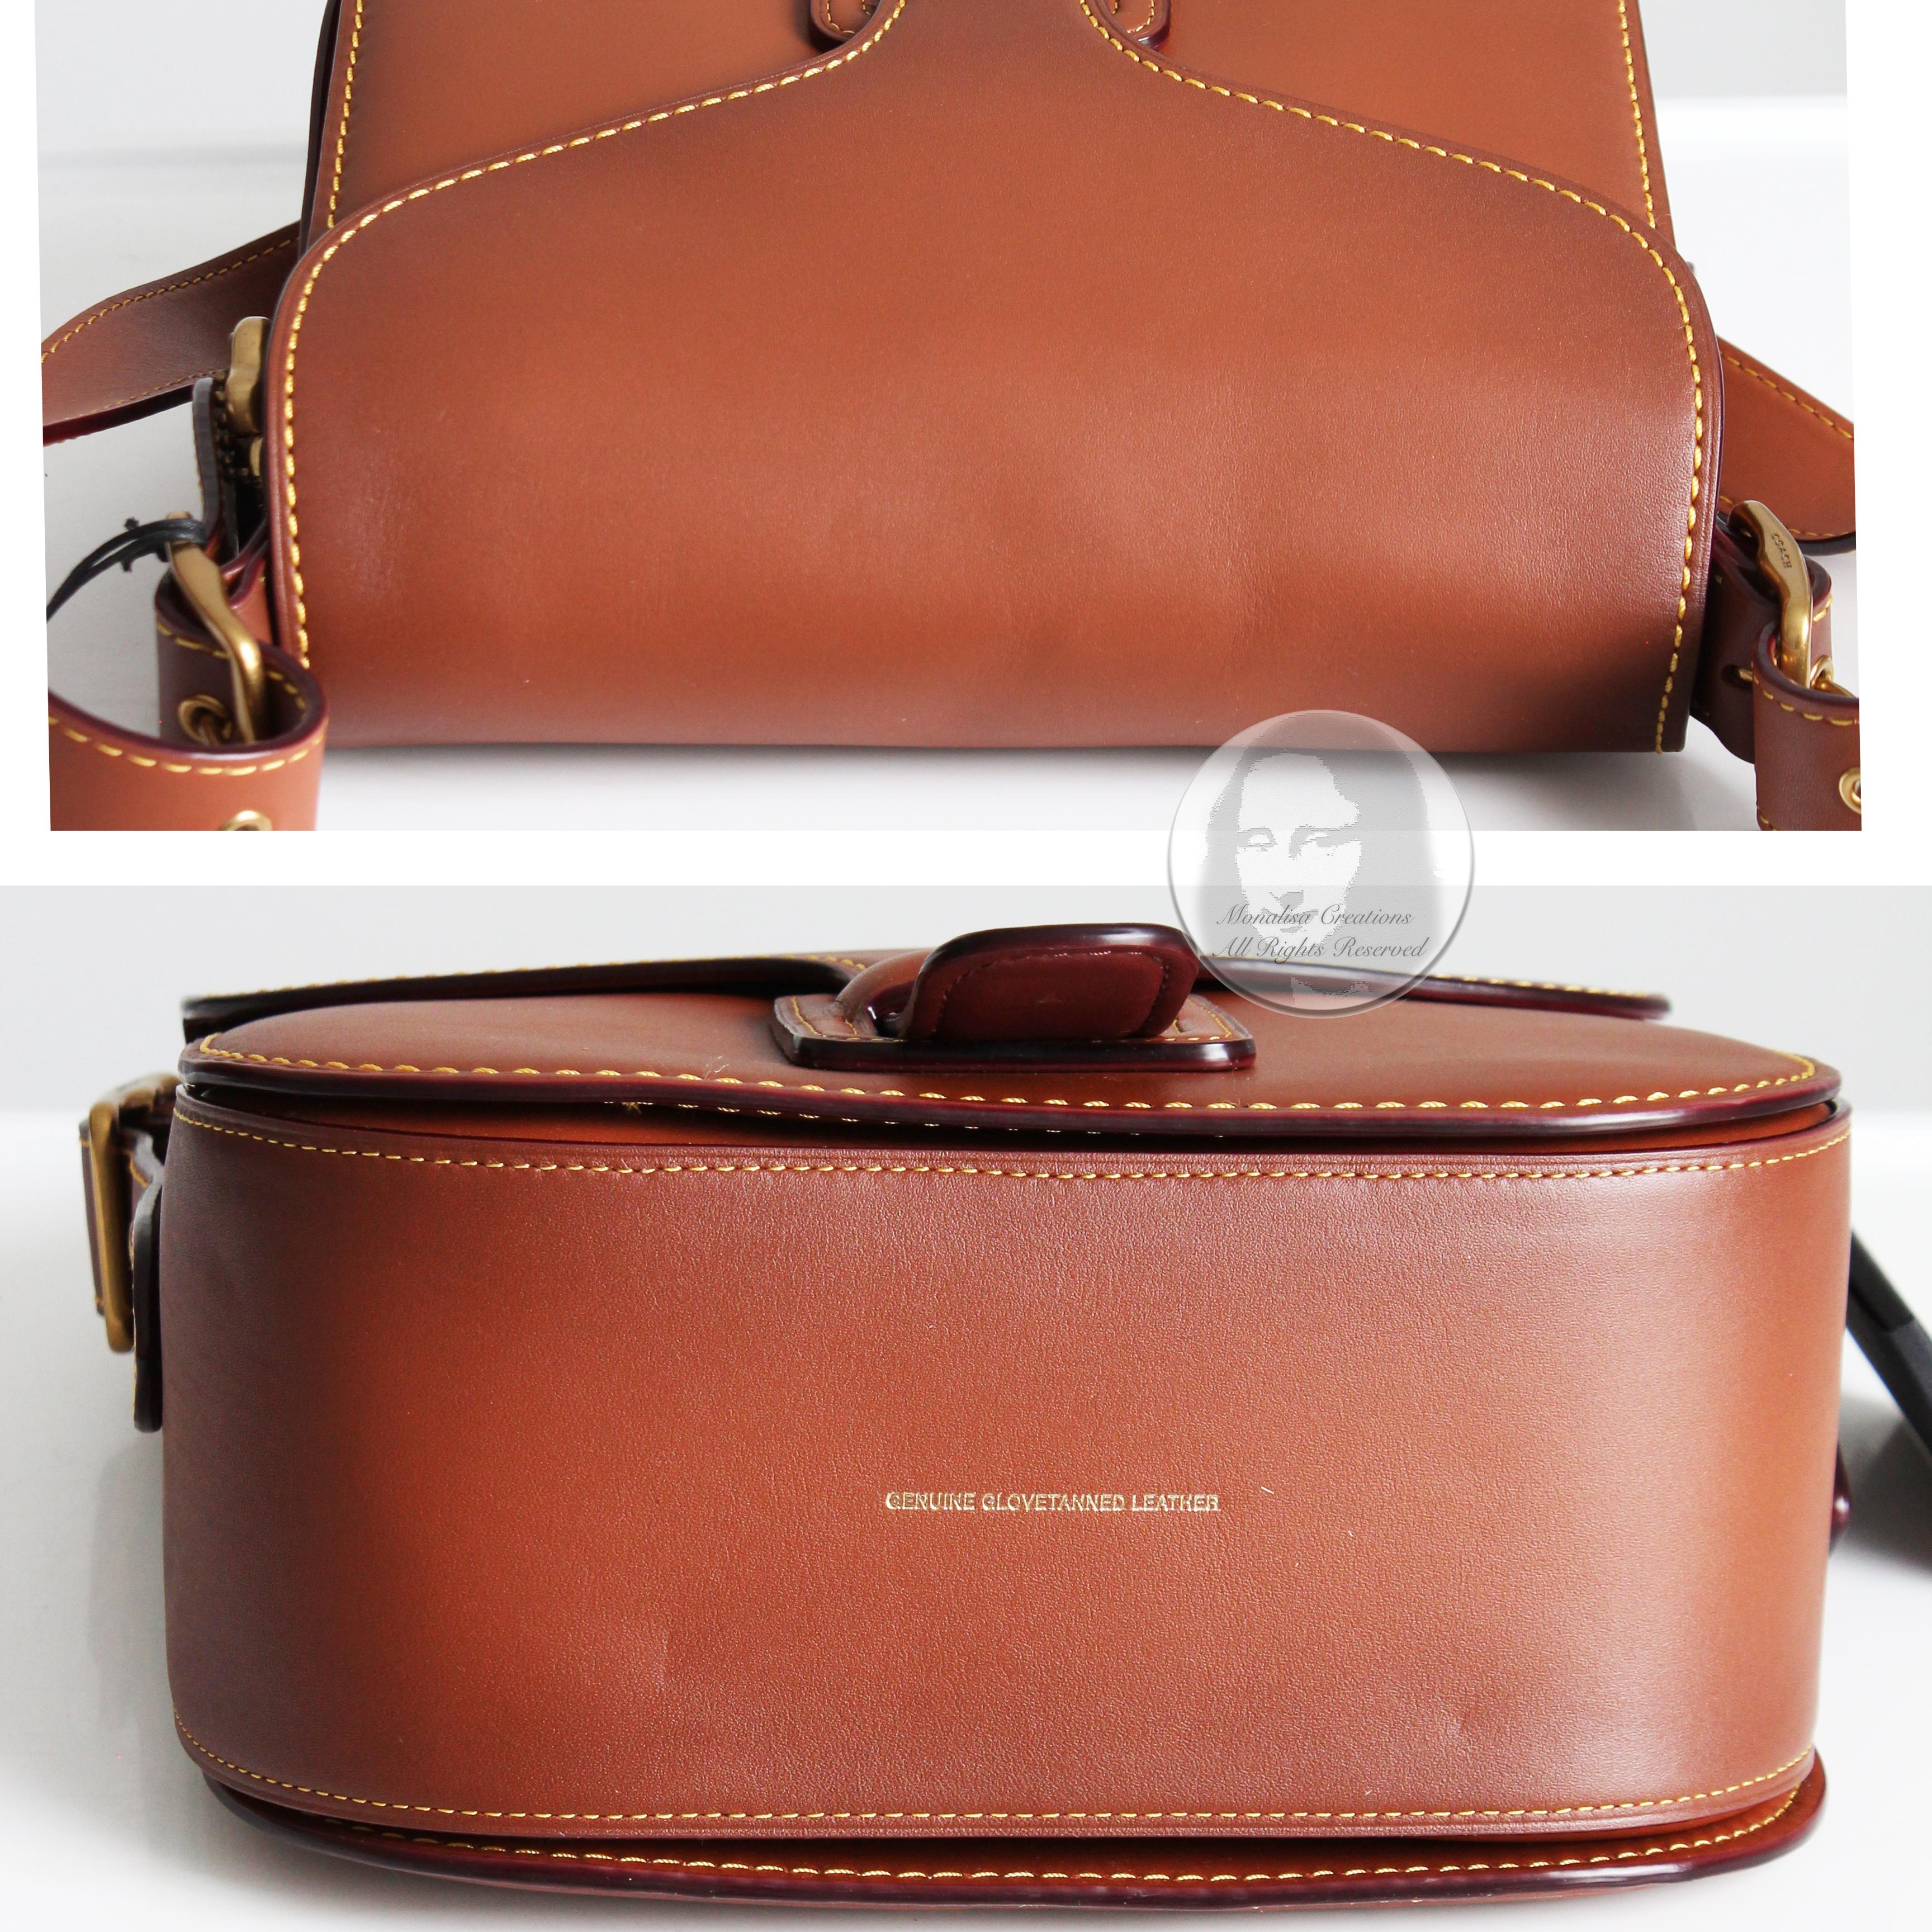 Coach Archive Courier Bag Saddle Leather Shoulder Bag Bonnie Cashin Design NWT 2